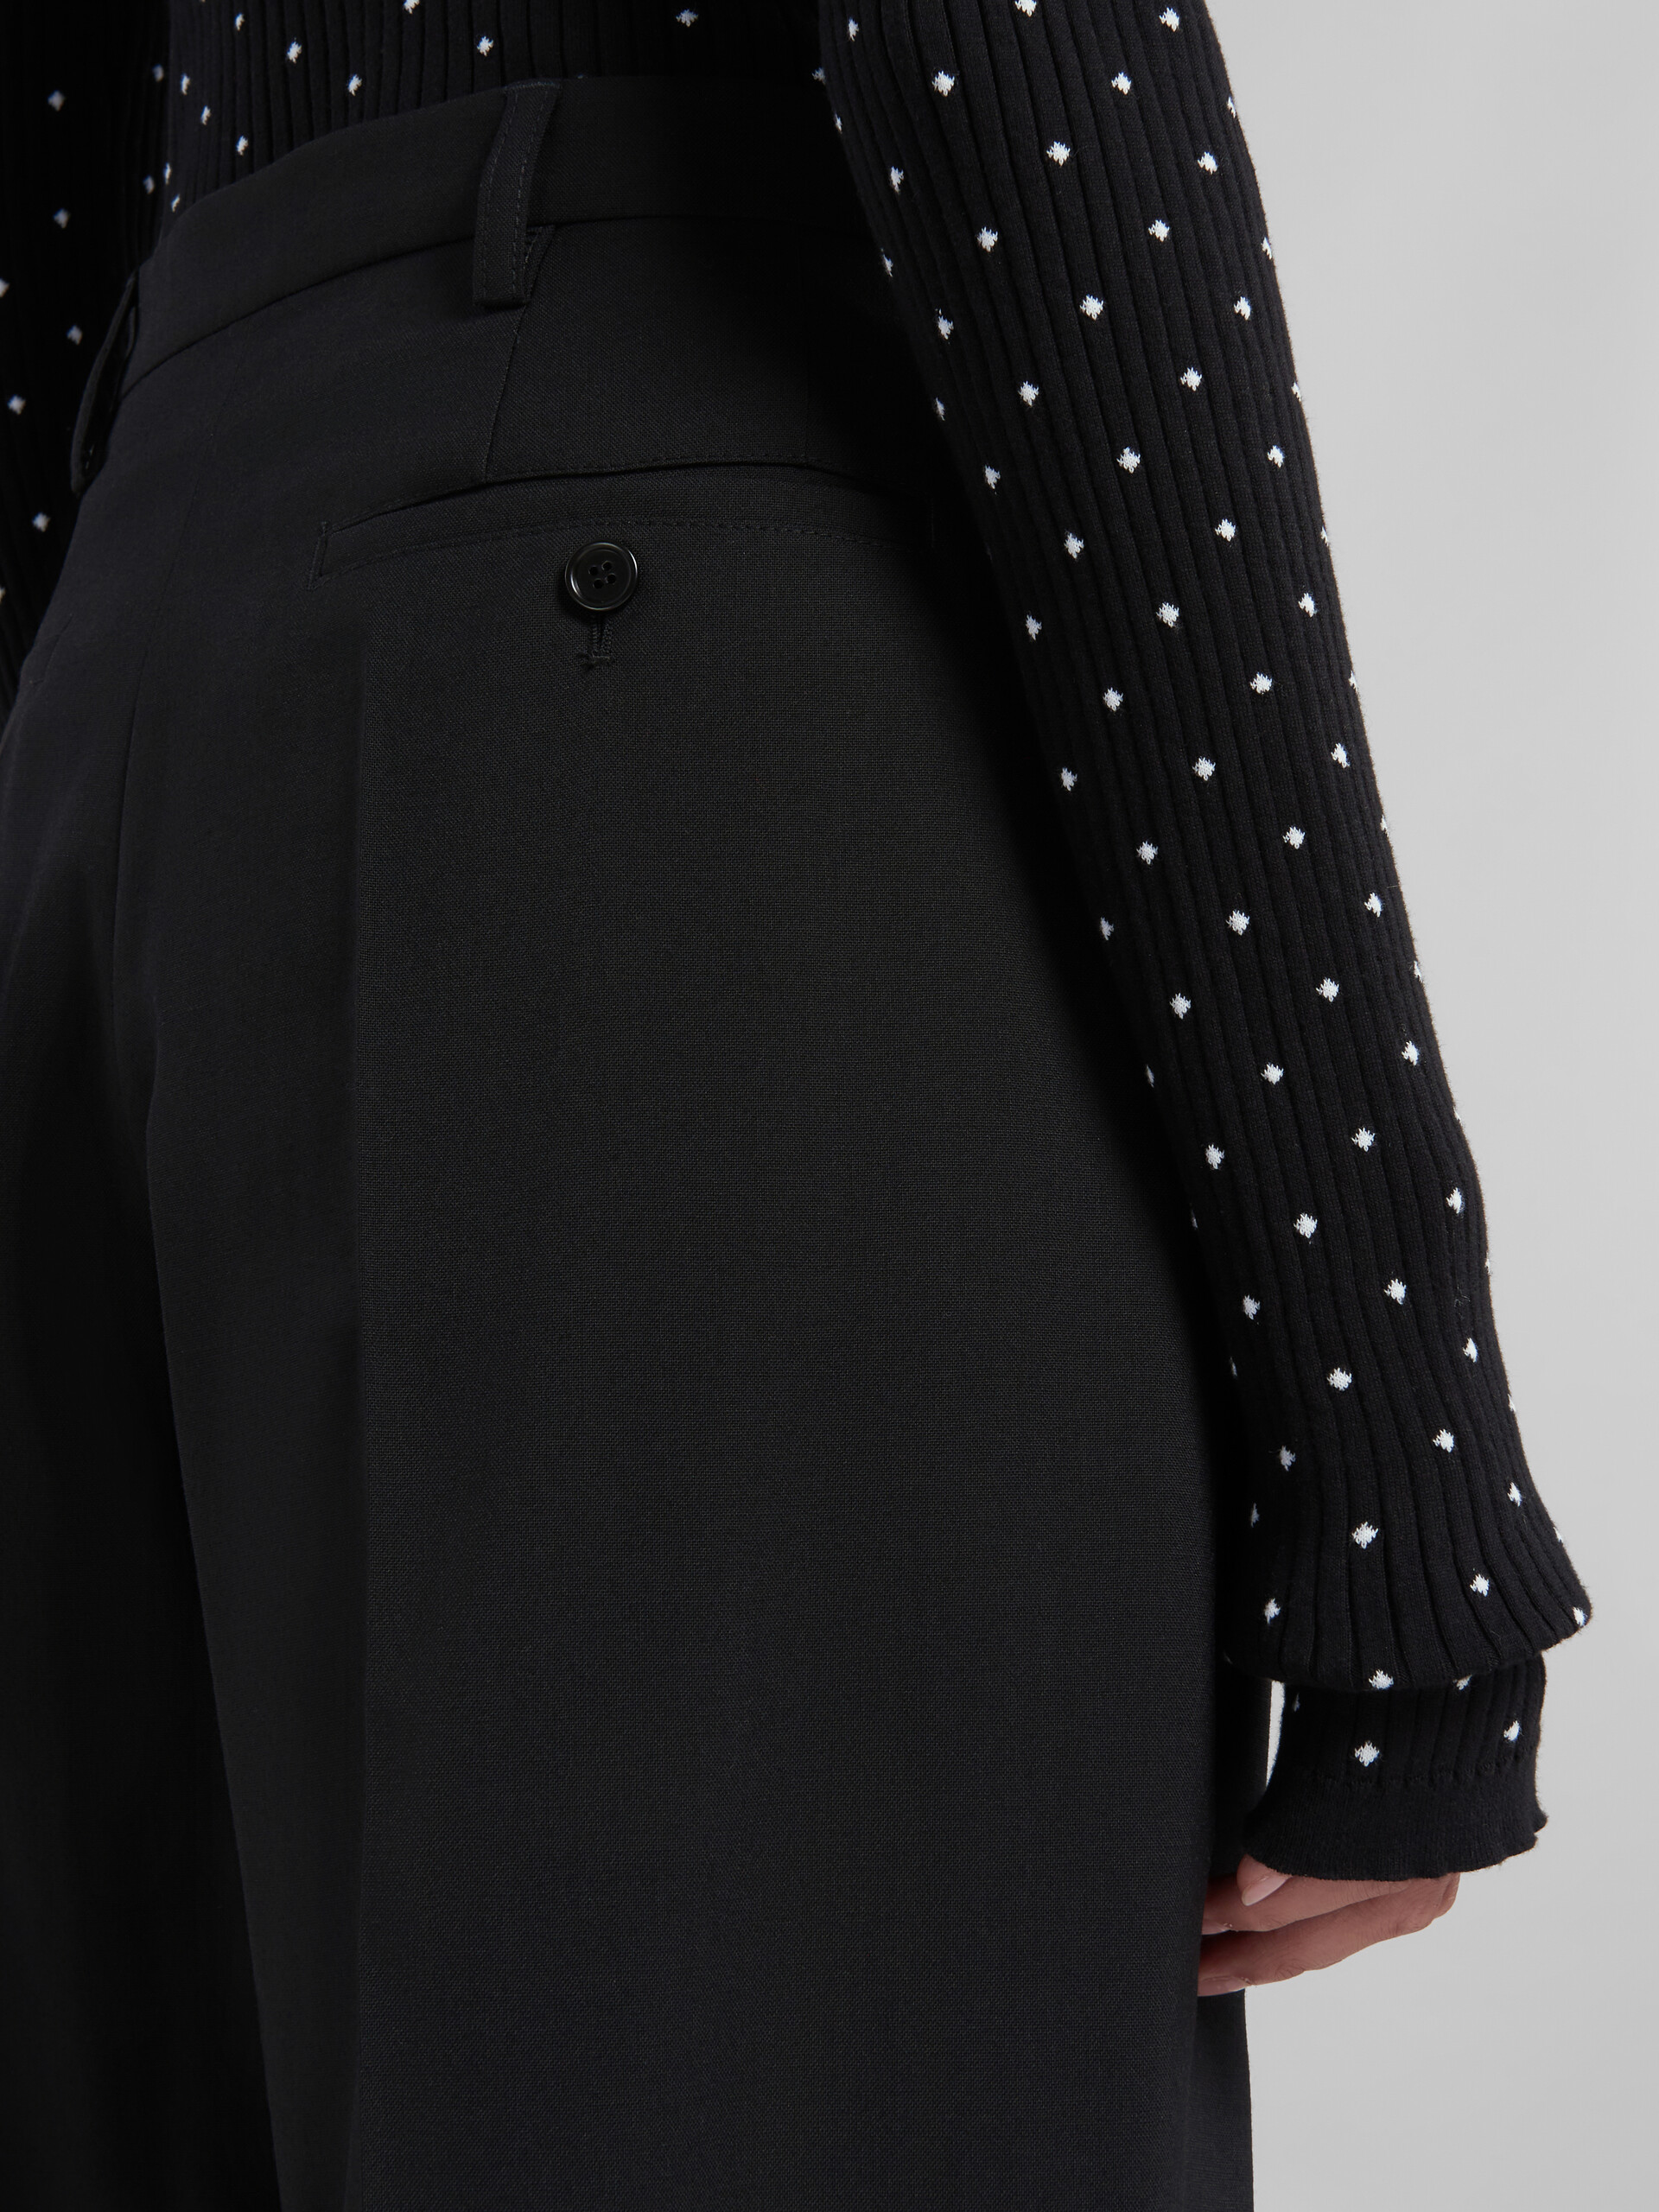 Pantalon ajusté en laine tropicale noire - Pantalons - Image 4